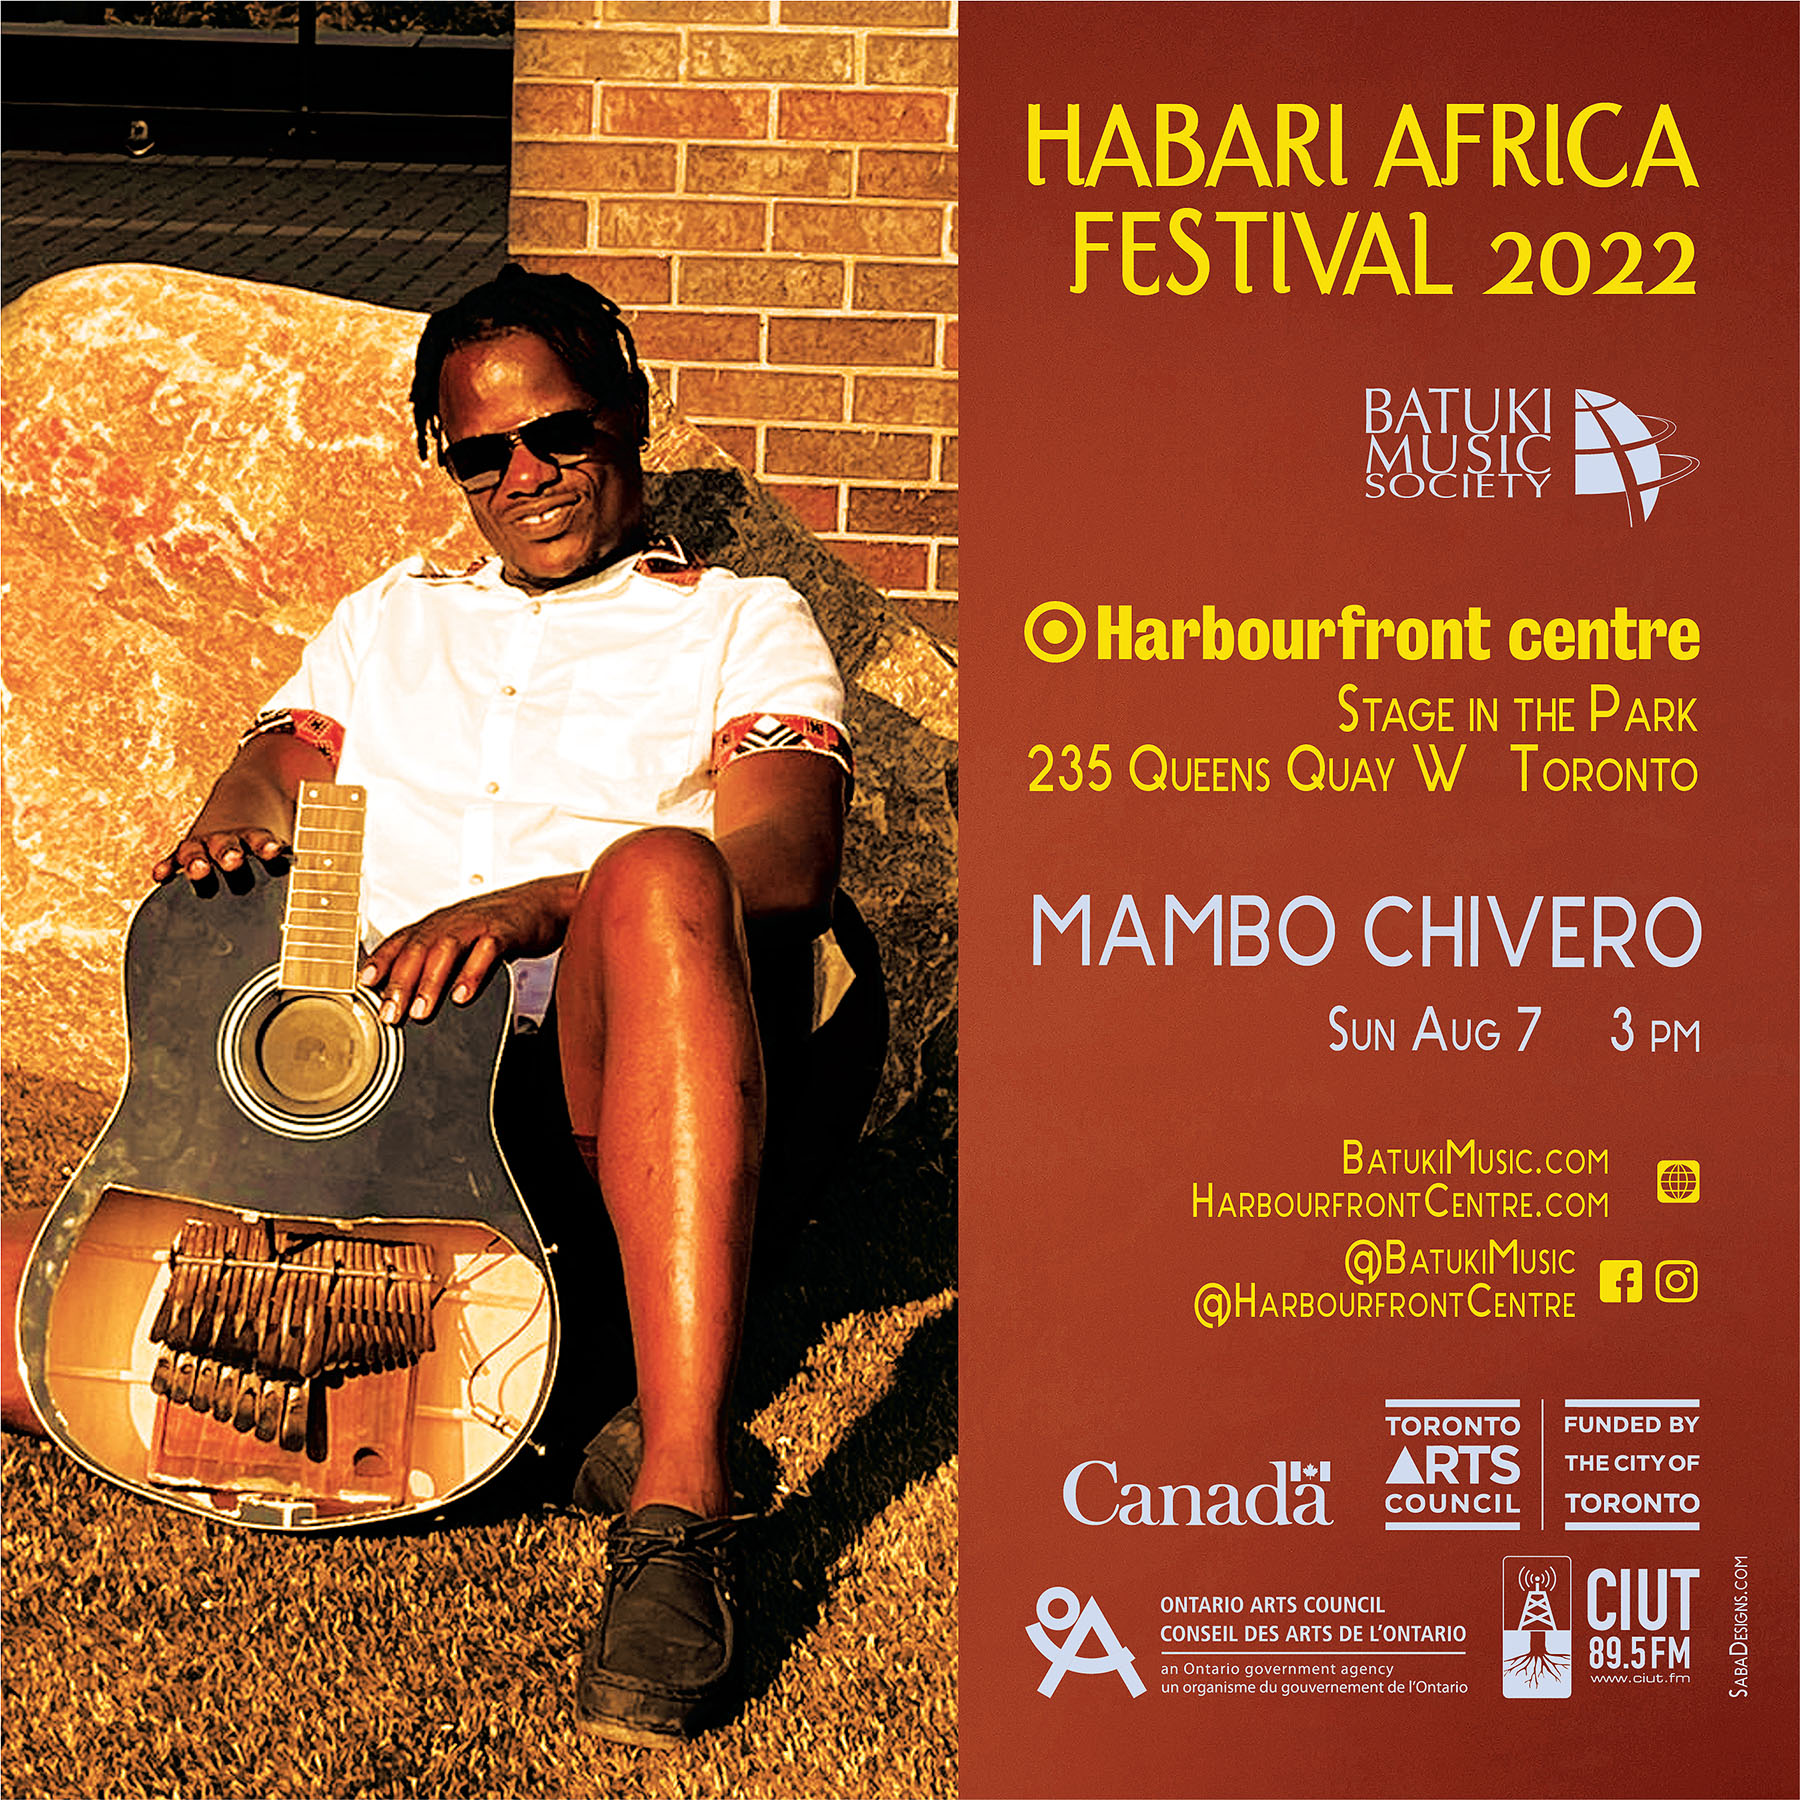 Habari Africa Live Festival 2022 by Batuki Music Society Mambo Chivero